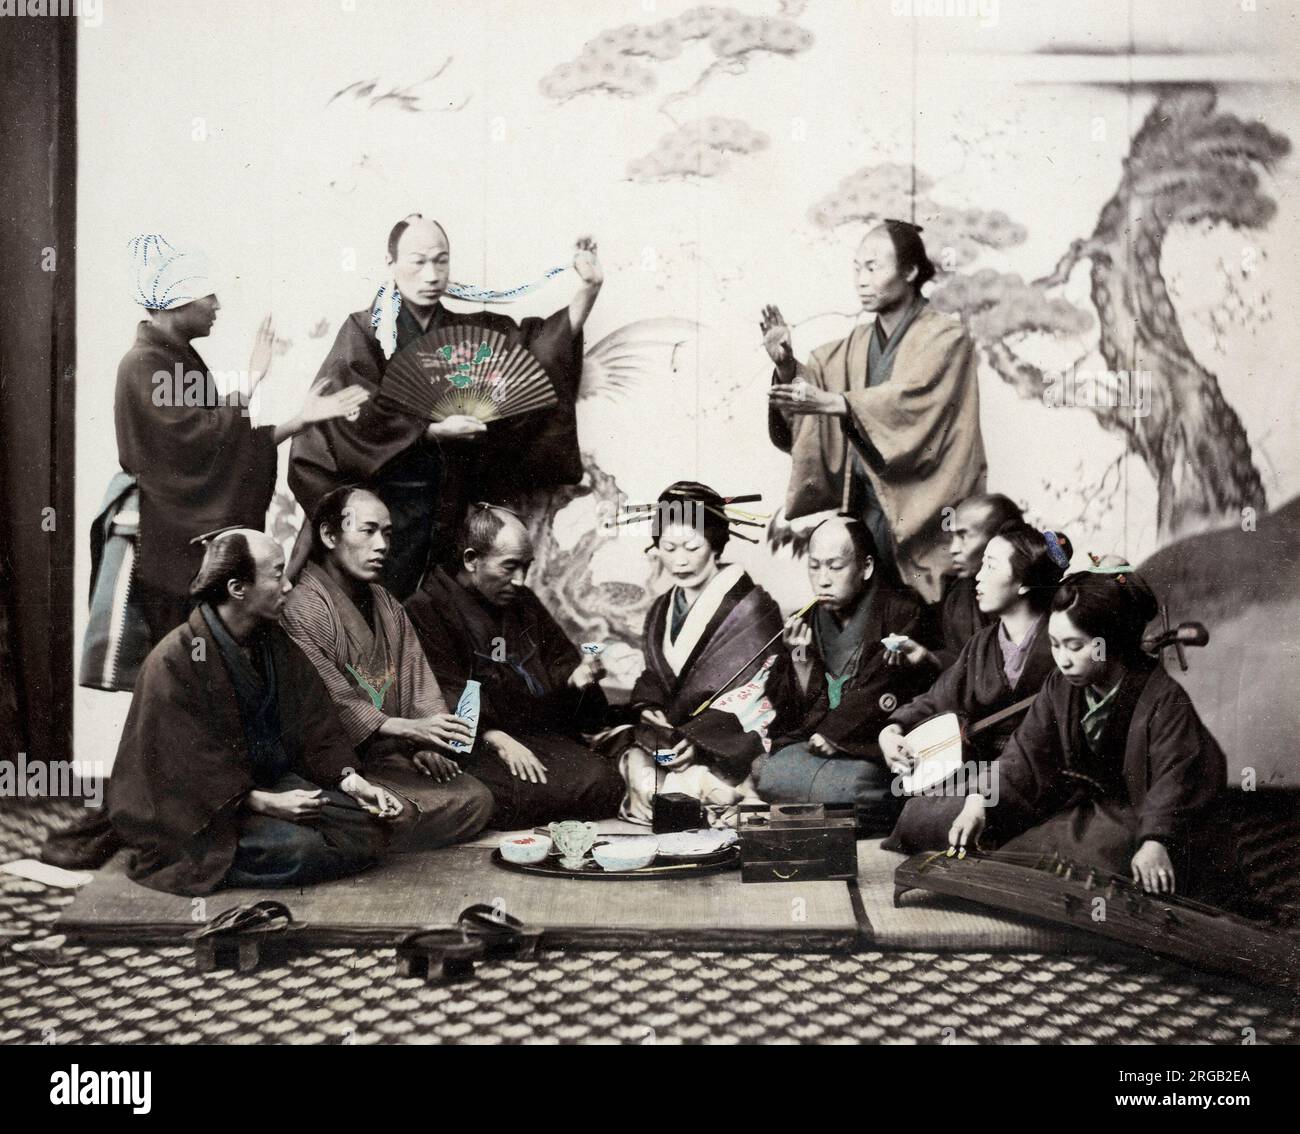 Giappone del 1860 - ritratto di un gruppo di uomini e donne che si gustano una cena sociale con musica danzante e sake Felix Beato (1832 - 29 gennaio 1909), fotografo italo-britannico che lavora principalmente in India, Giappone, Cina Foto Stock